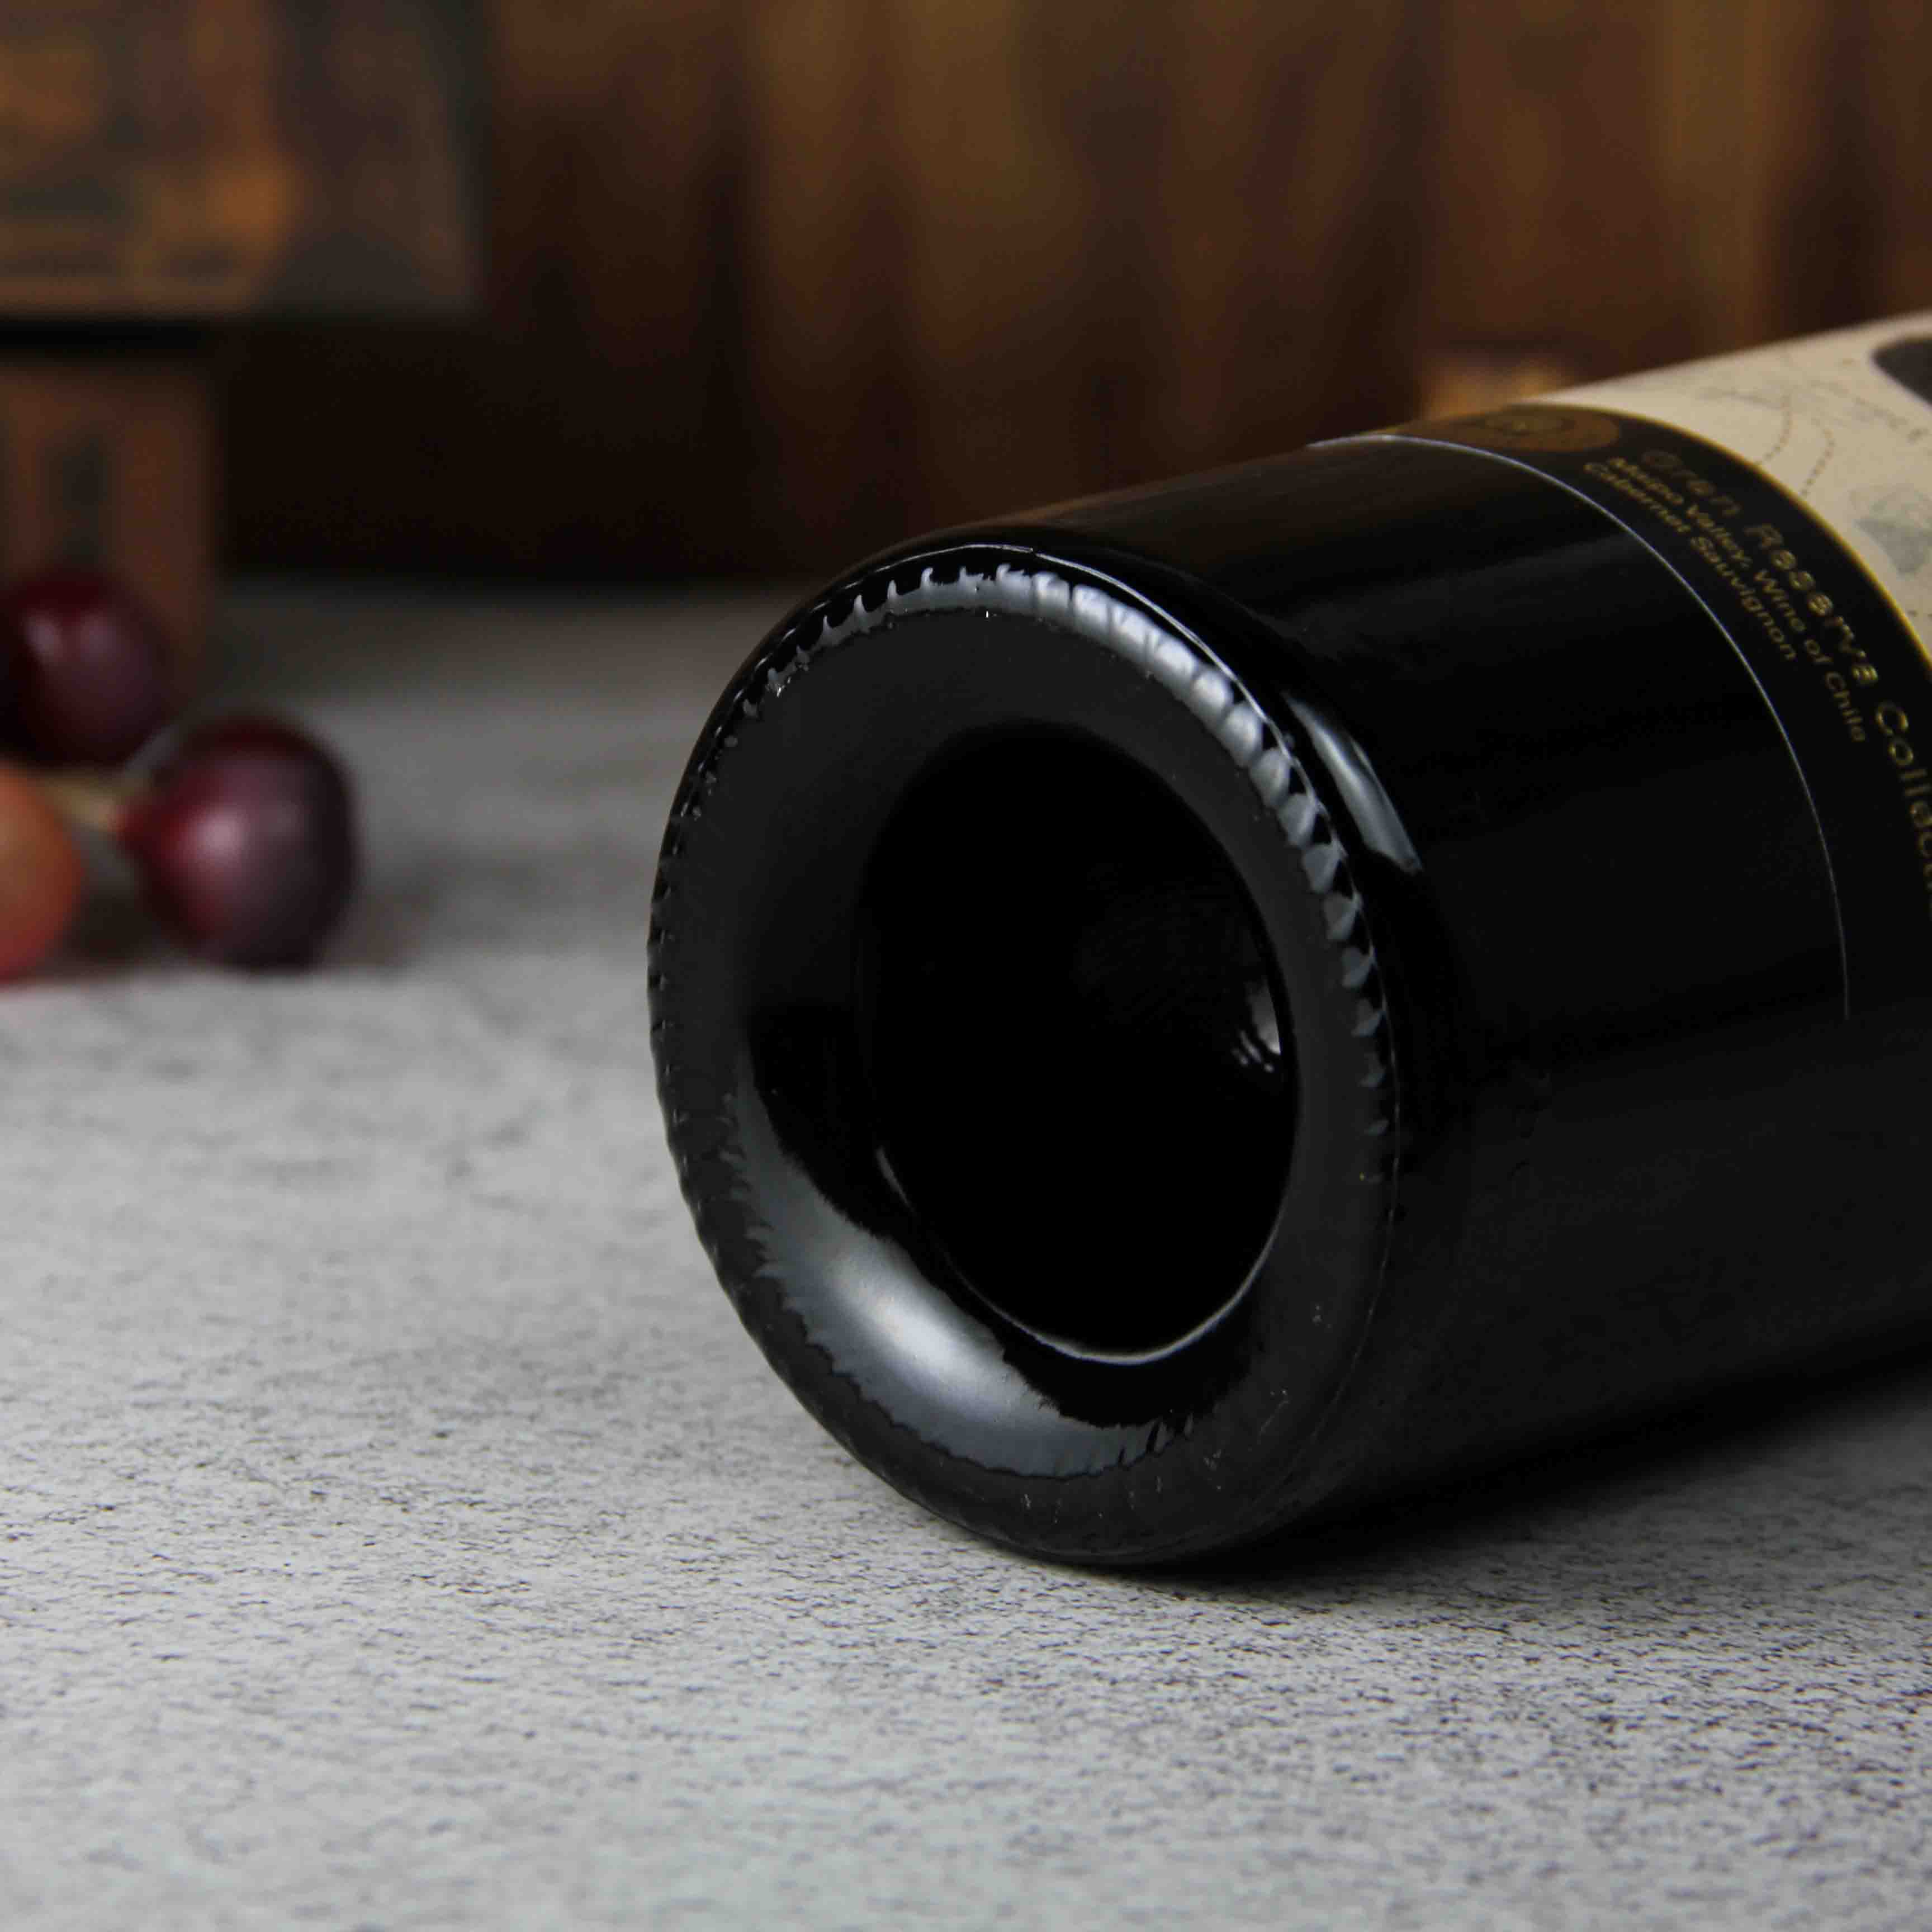 智利迈坡谷探索者特选珍藏赤霞珠红葡萄酒红酒